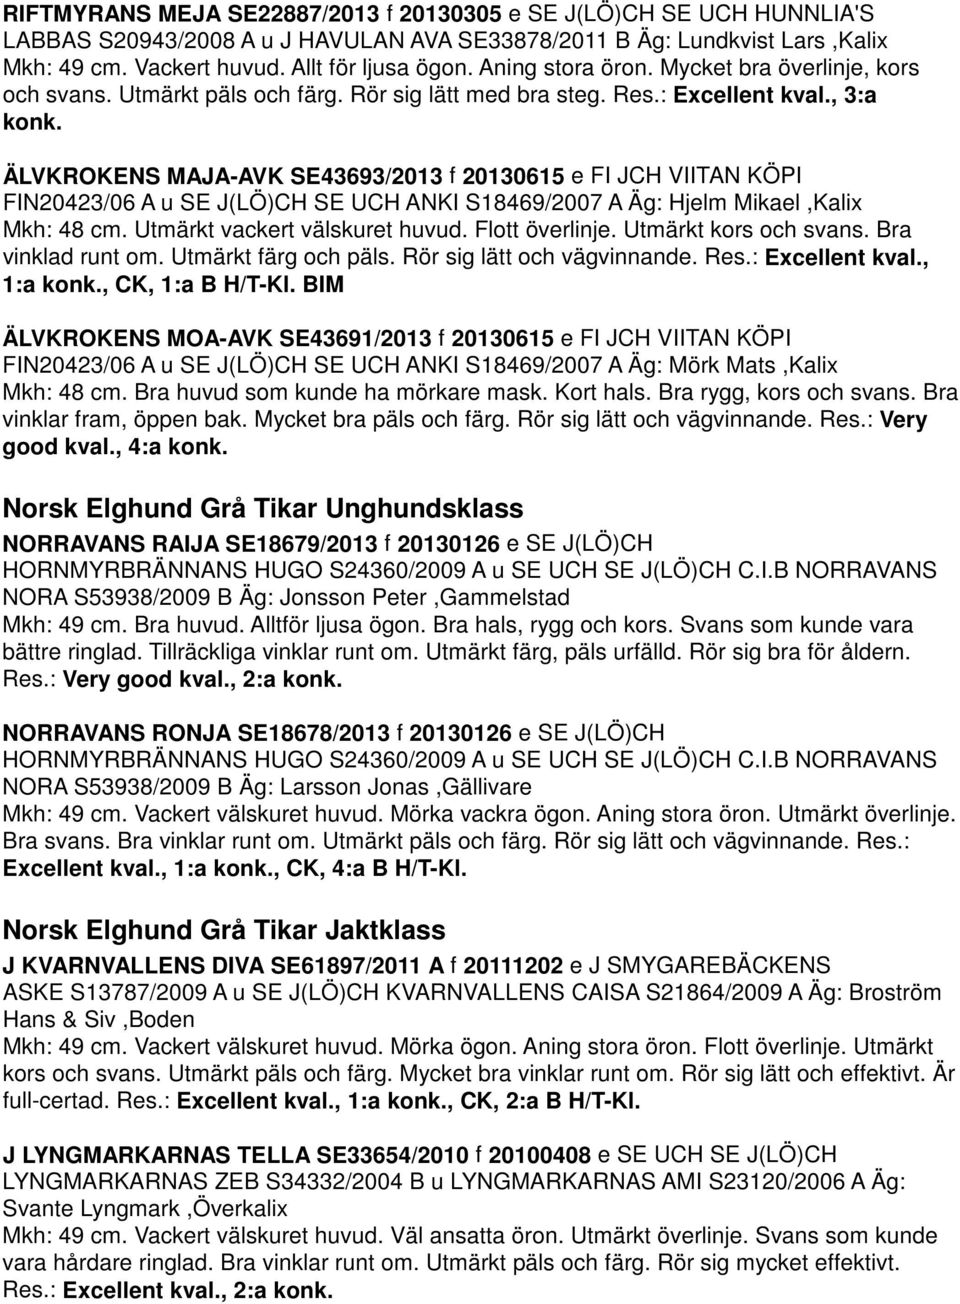 ÄLVKROKENS MAJA-AVK SE43693/2013 f 20130615 e FI JCH VIITAN KÖPI FIN20423/06 A u SE J(LÖ)CH SE UCH ANKI S18469/2007 A Äg: Hjelm Mikael,Kalix Mkh: 48 cm. Utmärkt vackert välskuret huvud.